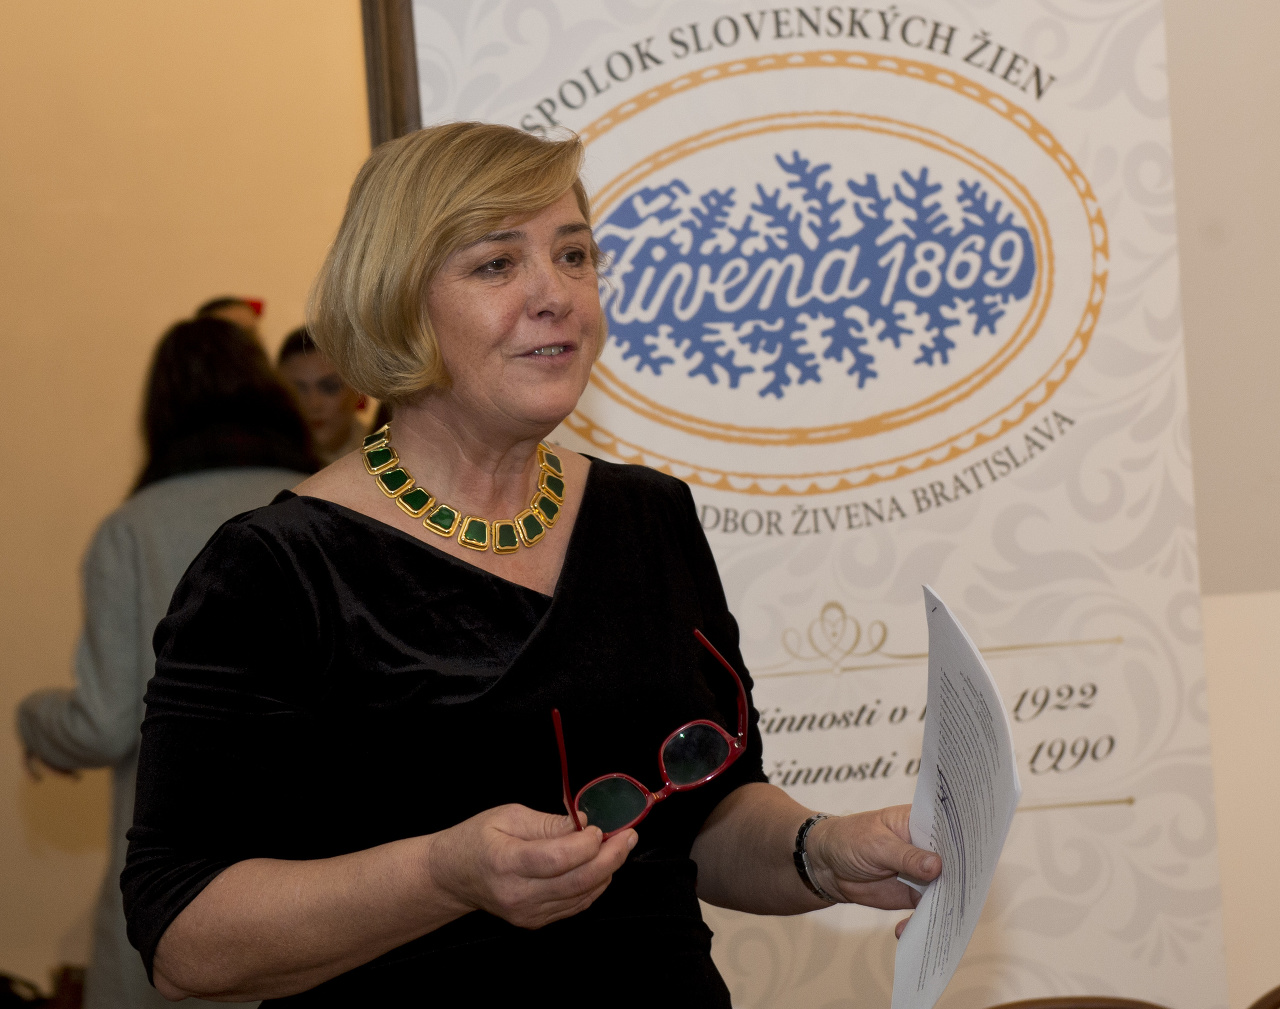 Predsedníčka Miestneho odboru Živena Bratislava Alena Bučeková